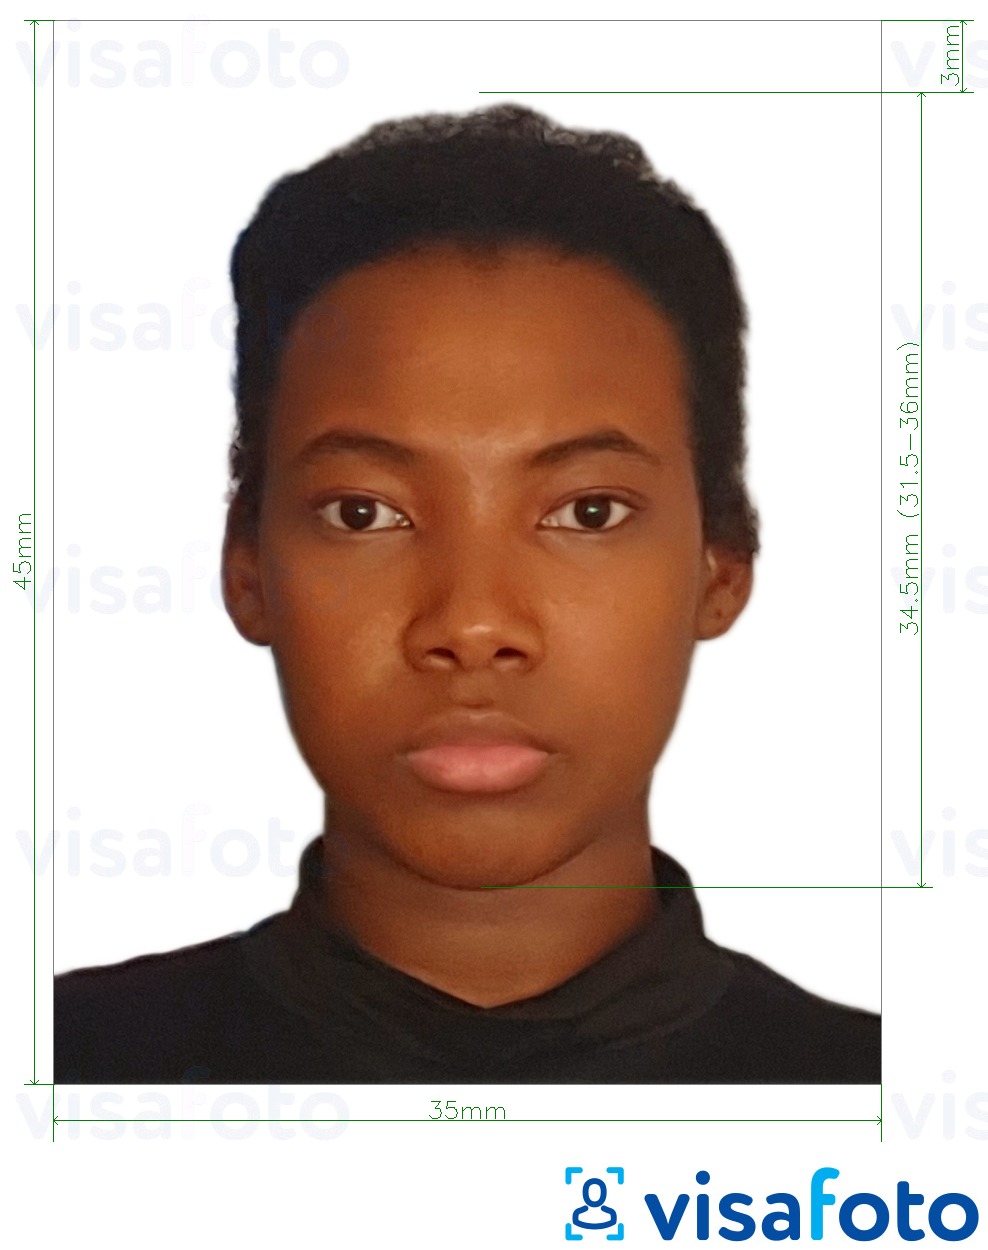 Voorbeeld van foto voor Ghana paspoort 3.5x4.5 cm (35x45 mm) met exacte maatspecificatie